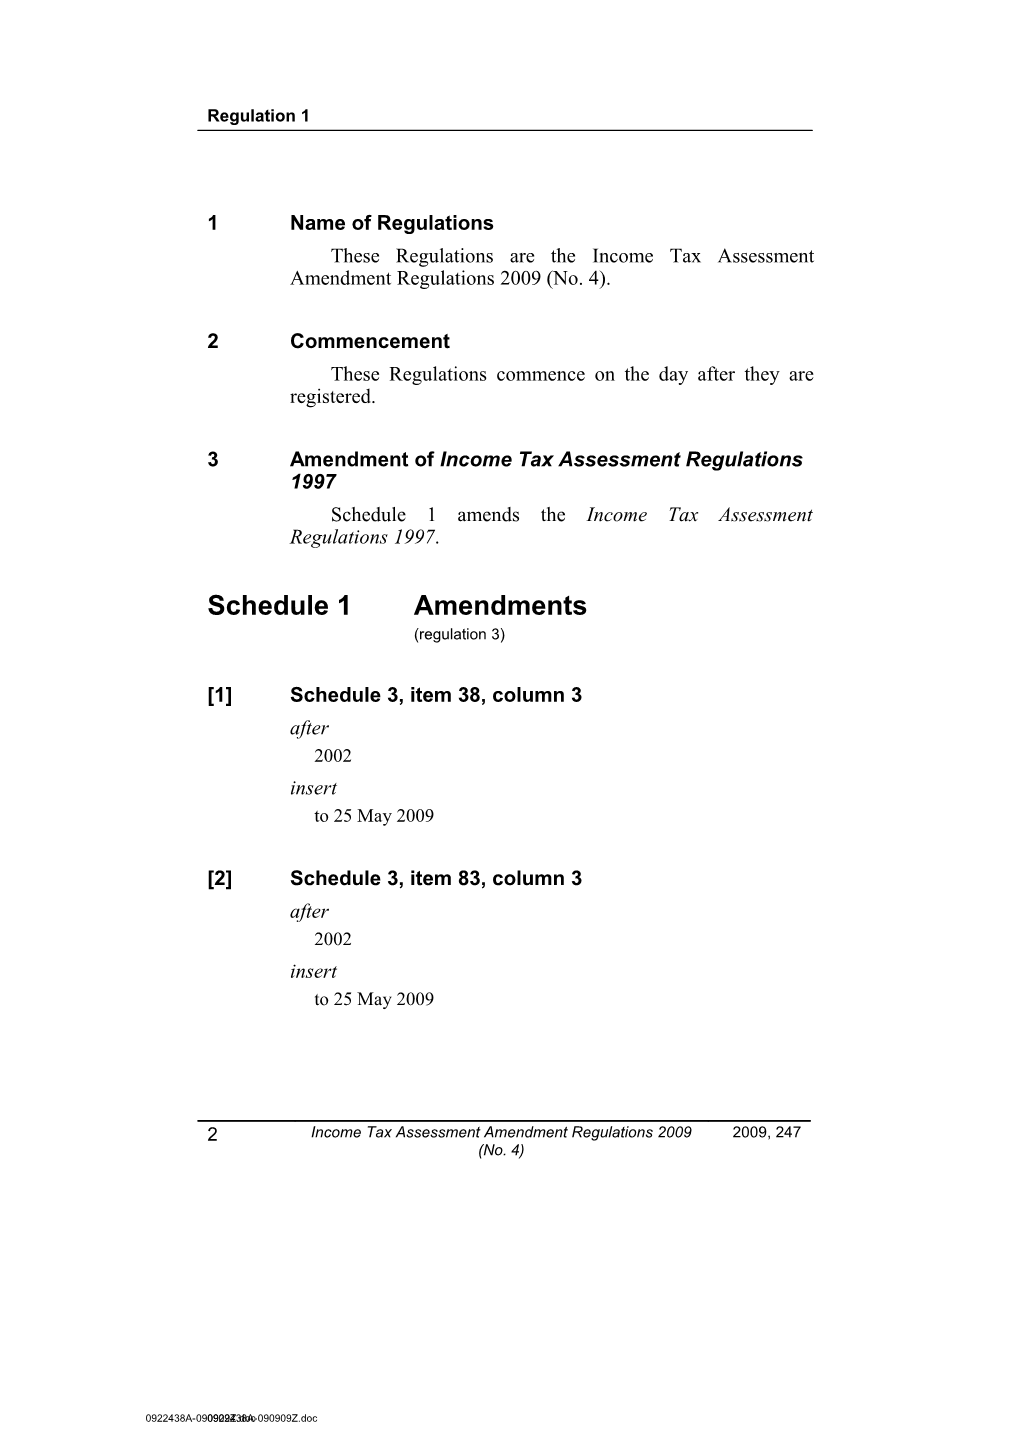 Income Tax Assessment Amendment Regulations 2009 (No. )